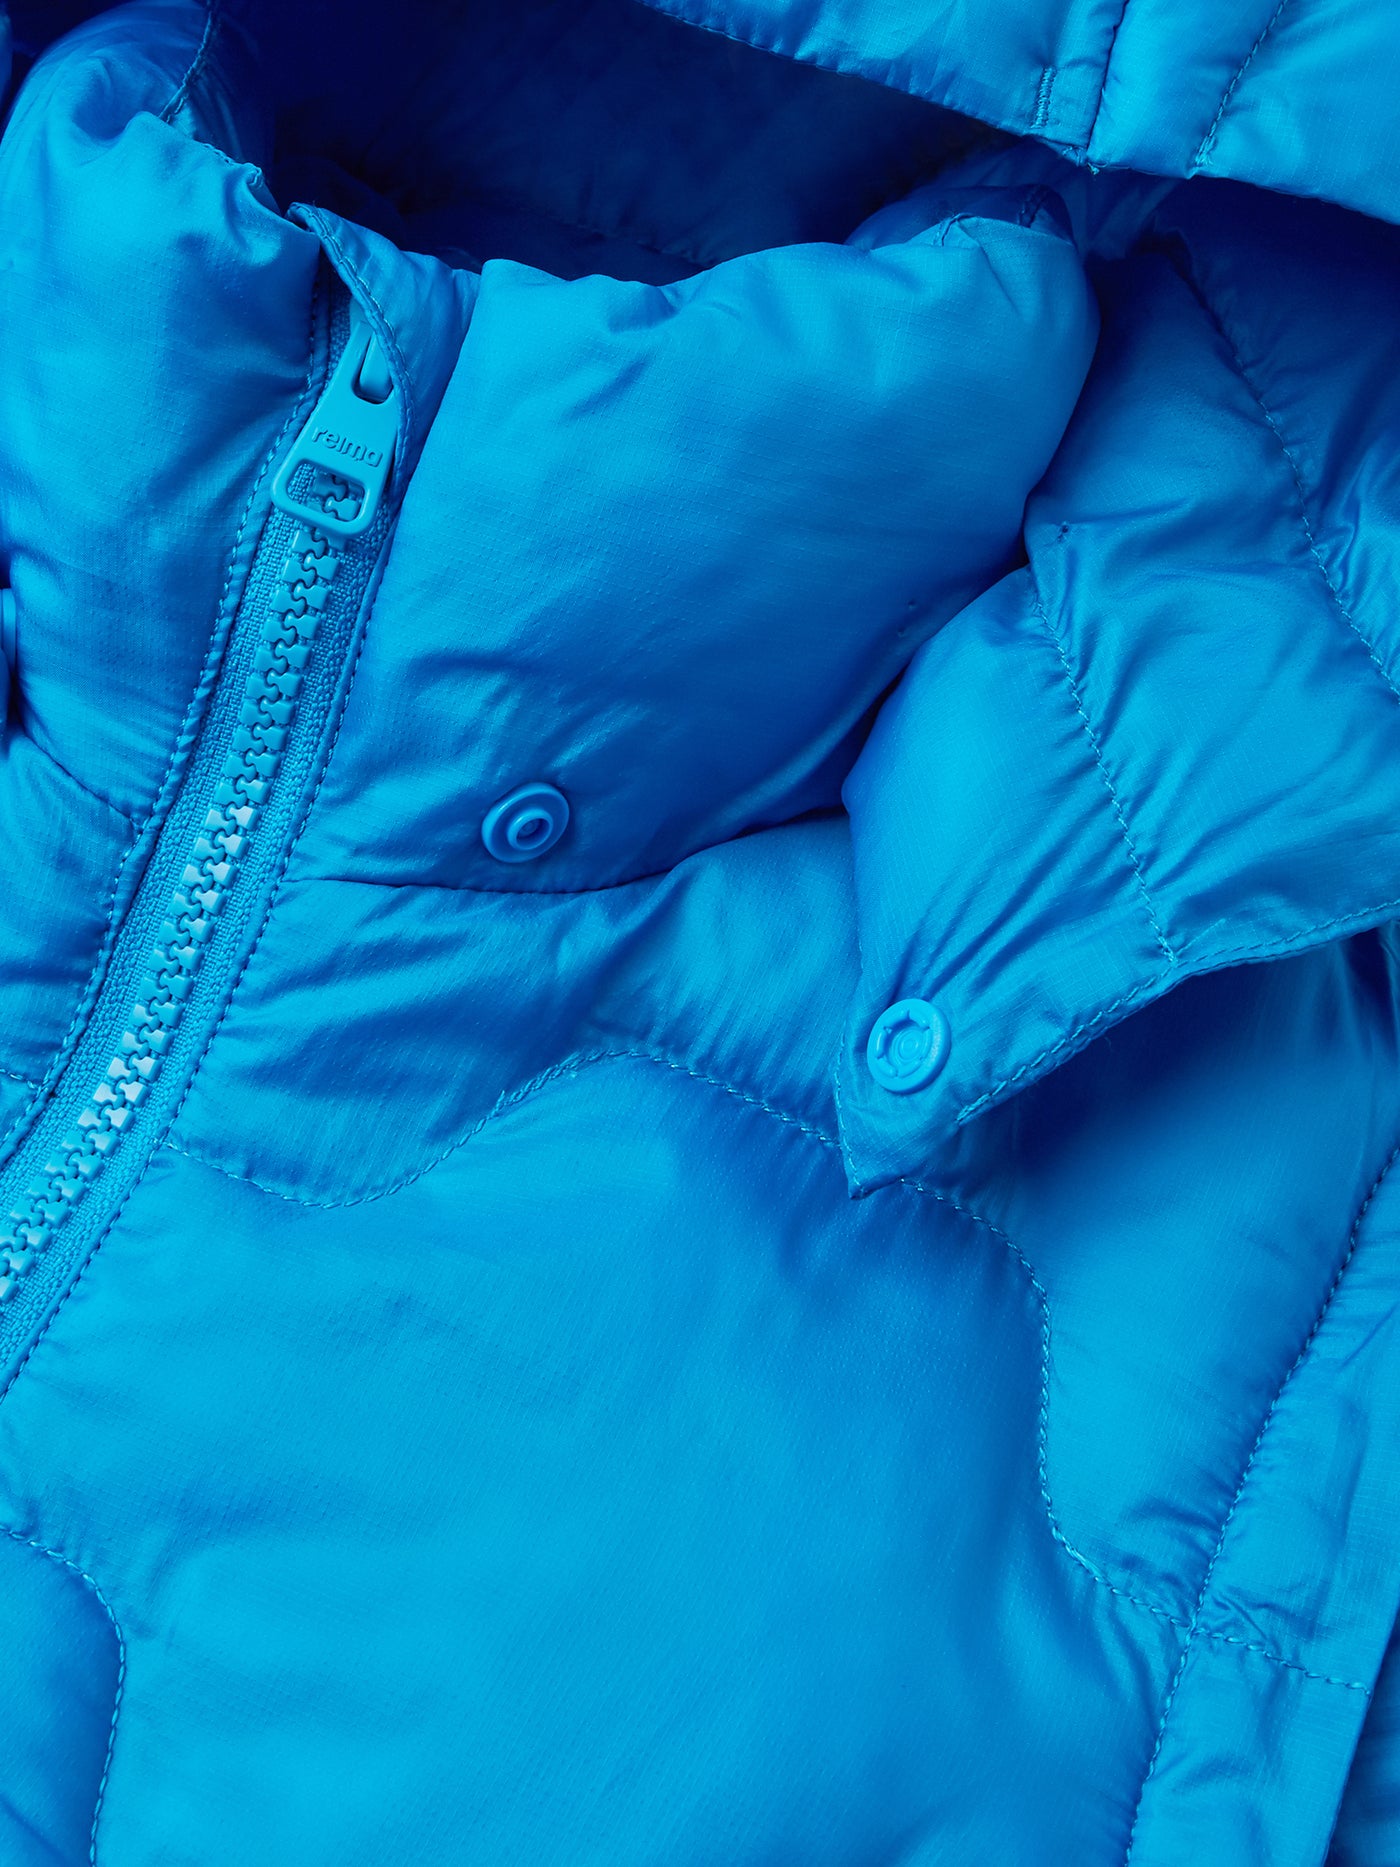 Reiman sinisestä Veke-kevyttoppatakista kuvattuna takin hupun neppari